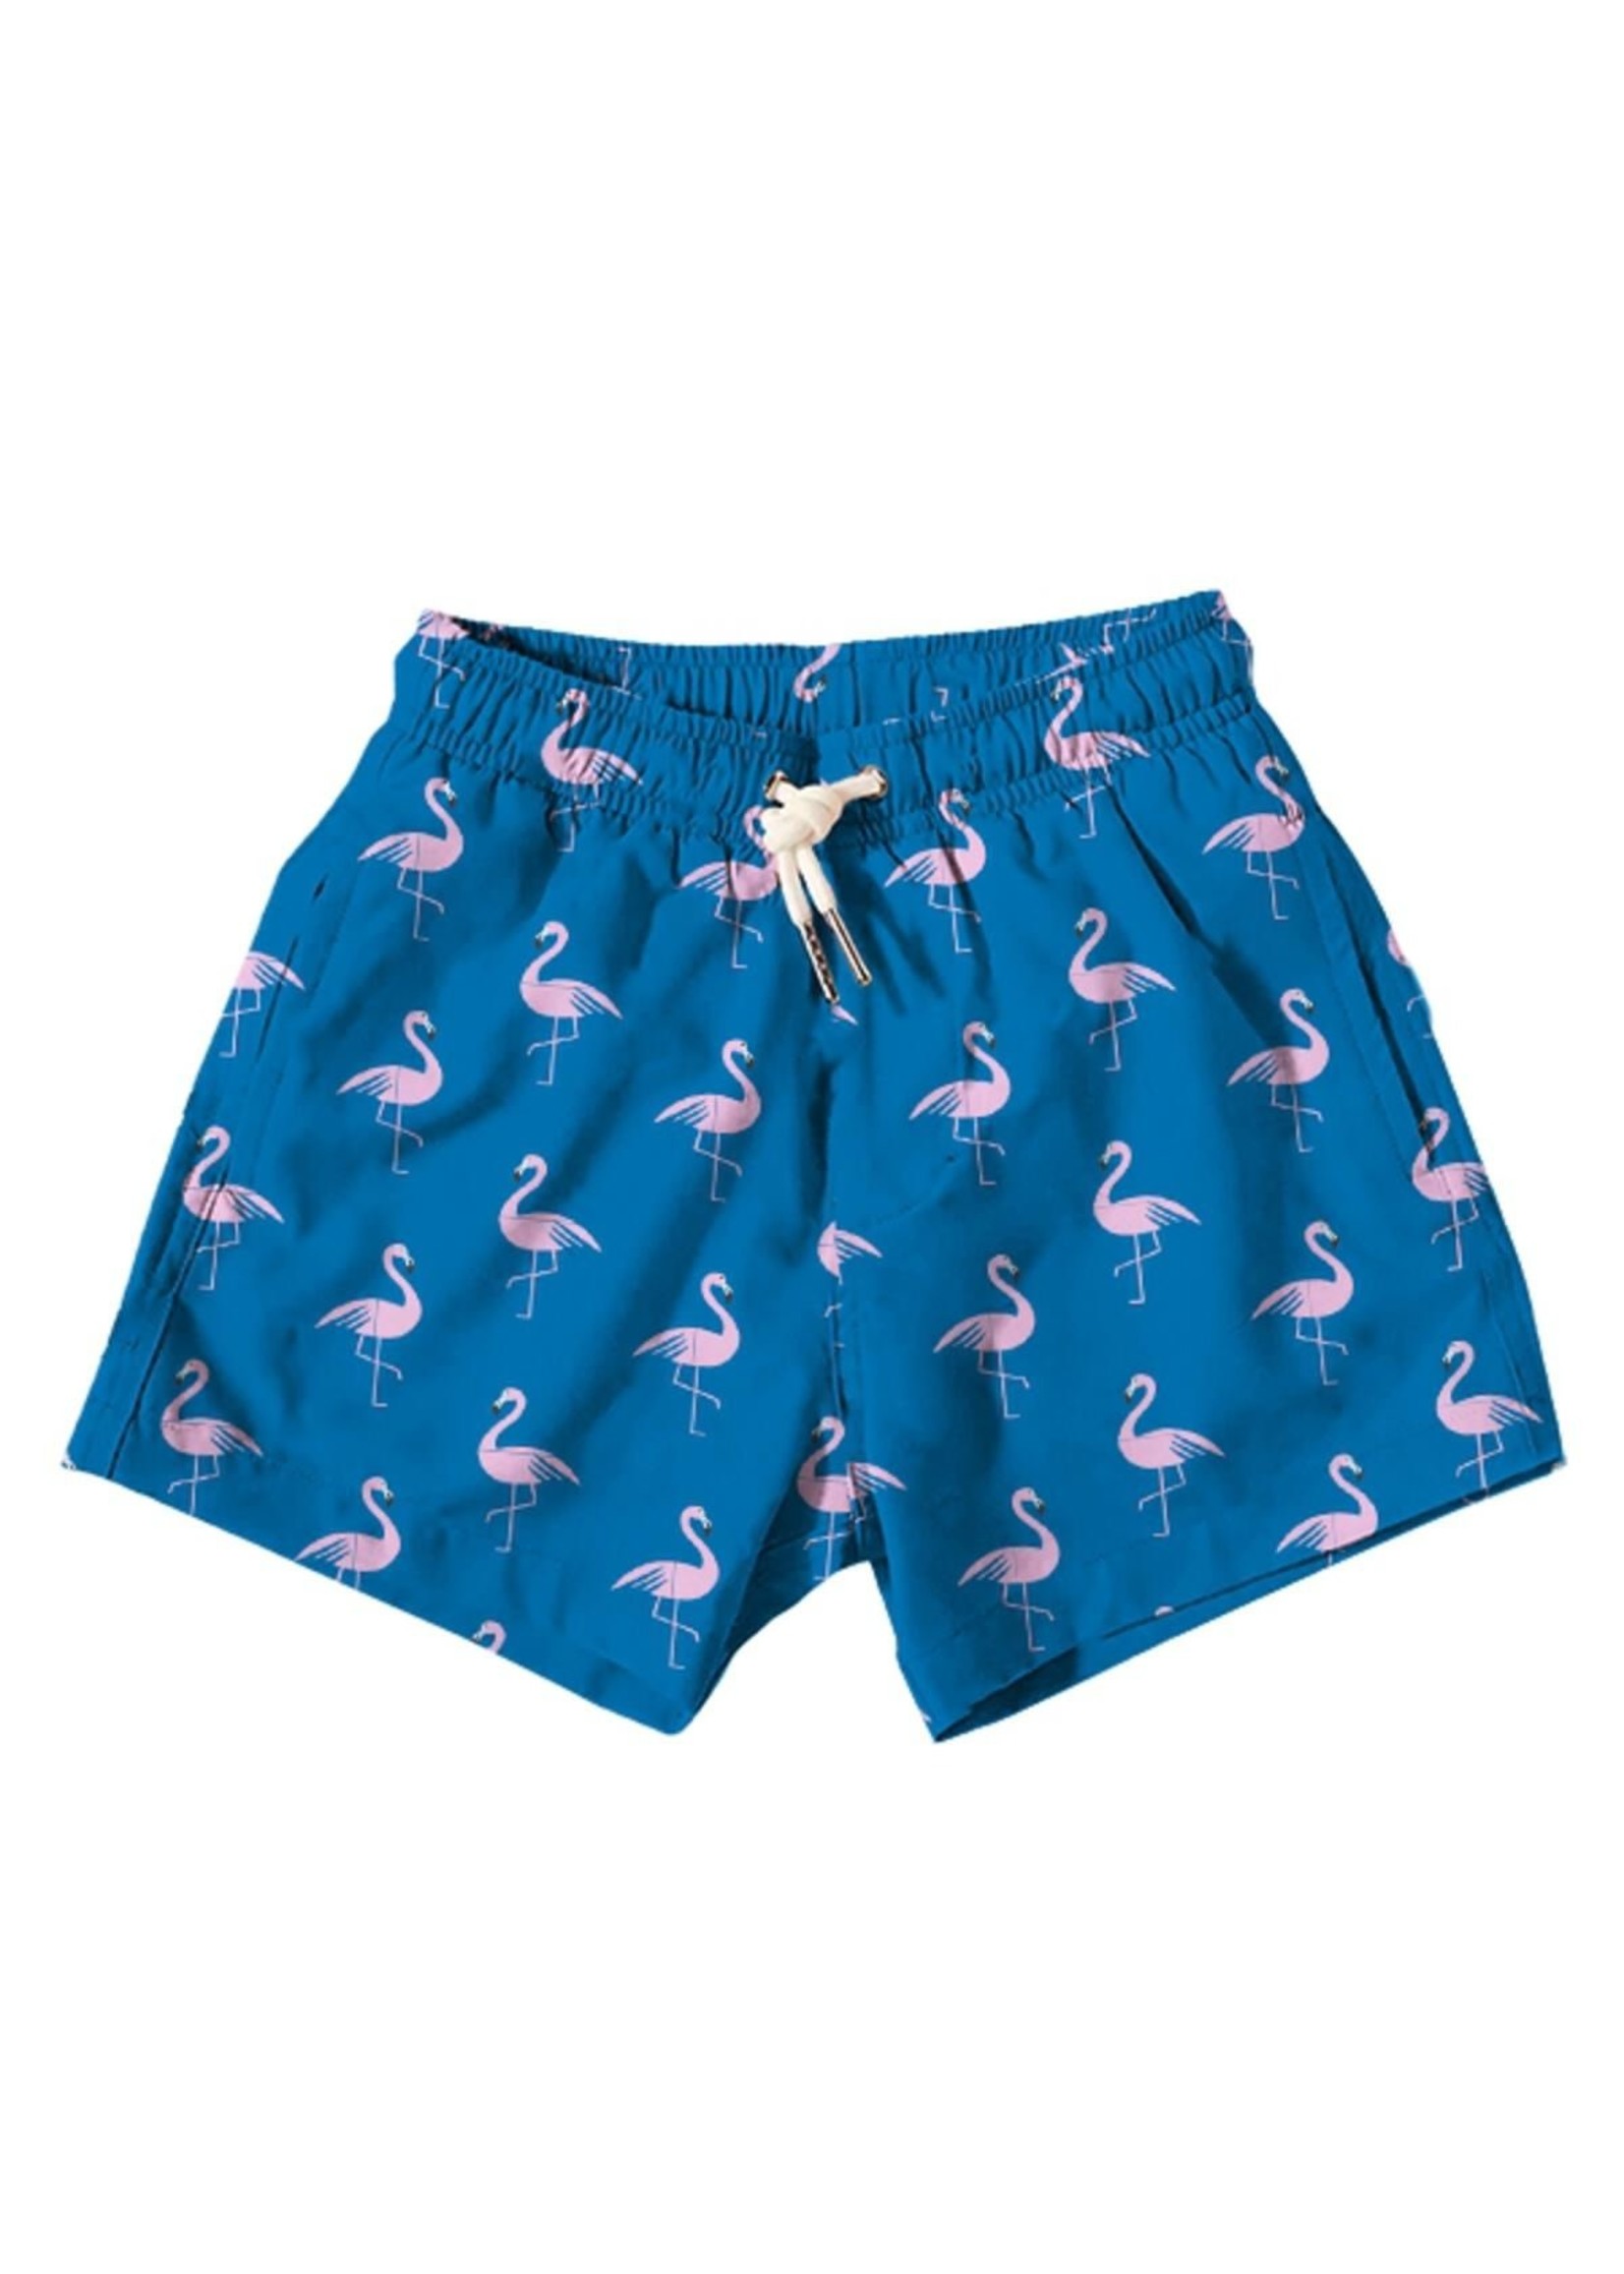 Bermies Crazy Flamingo Swim Trunks